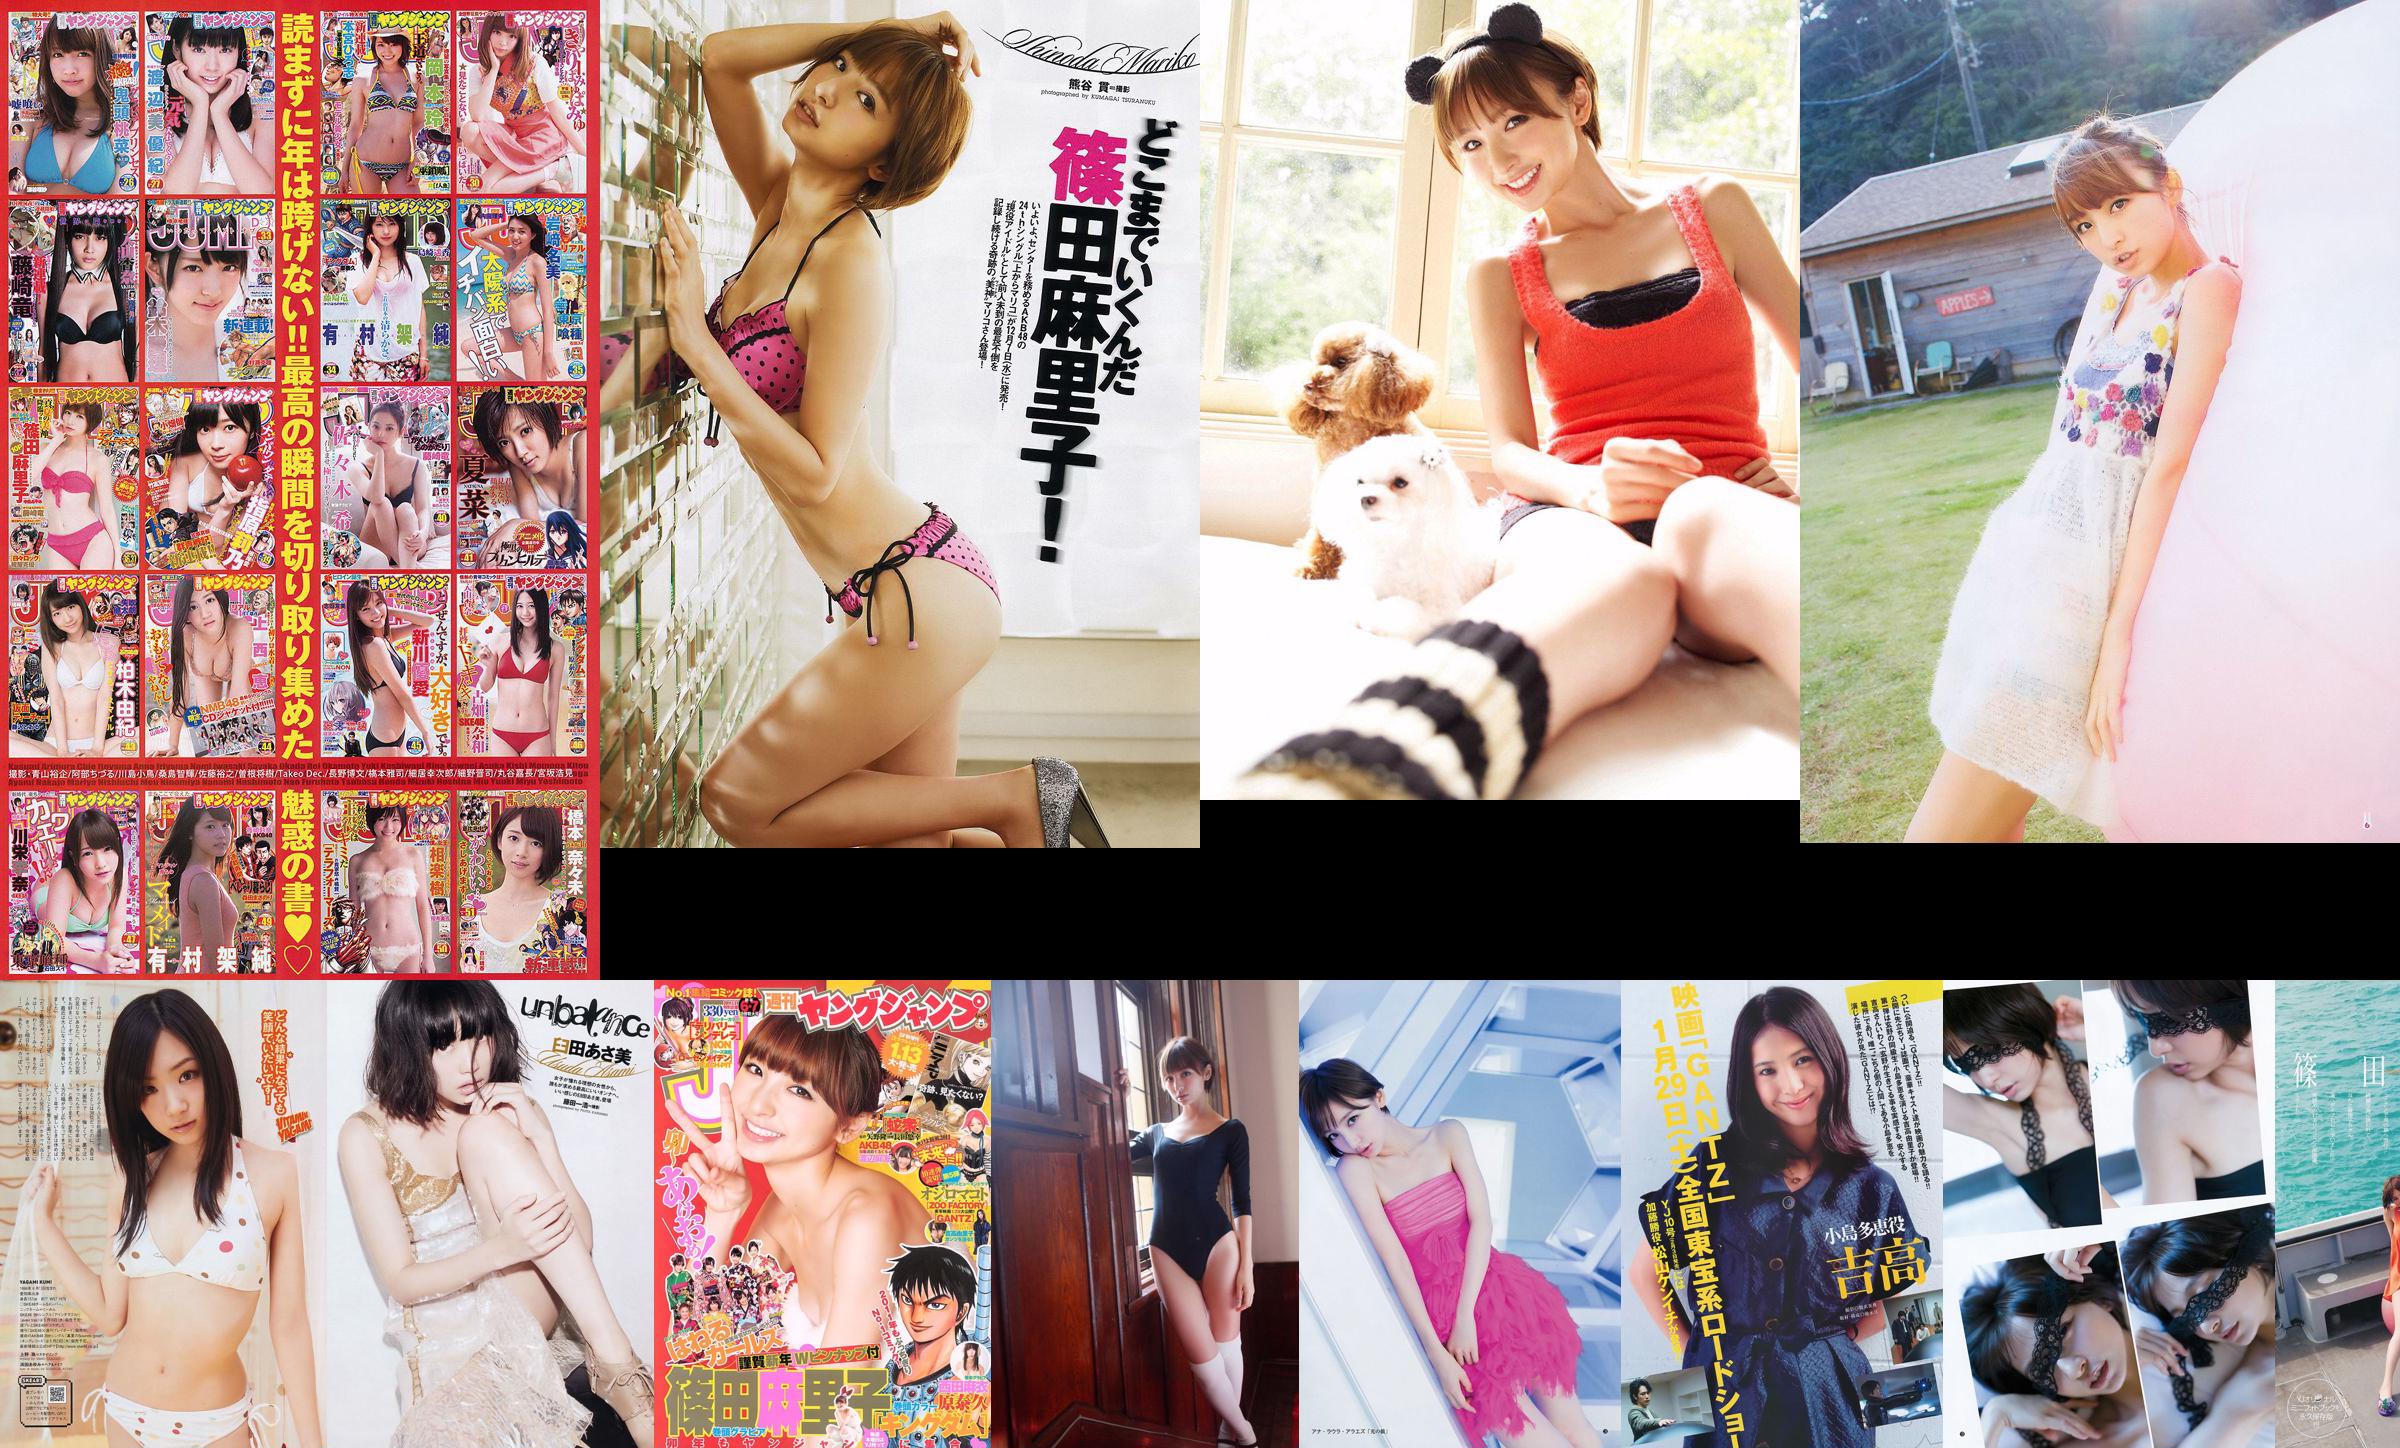 French Kiss Mariko Shinoda [Weekly Young Jump] 2011 No.52 Fotografía No.db8656 Página 1